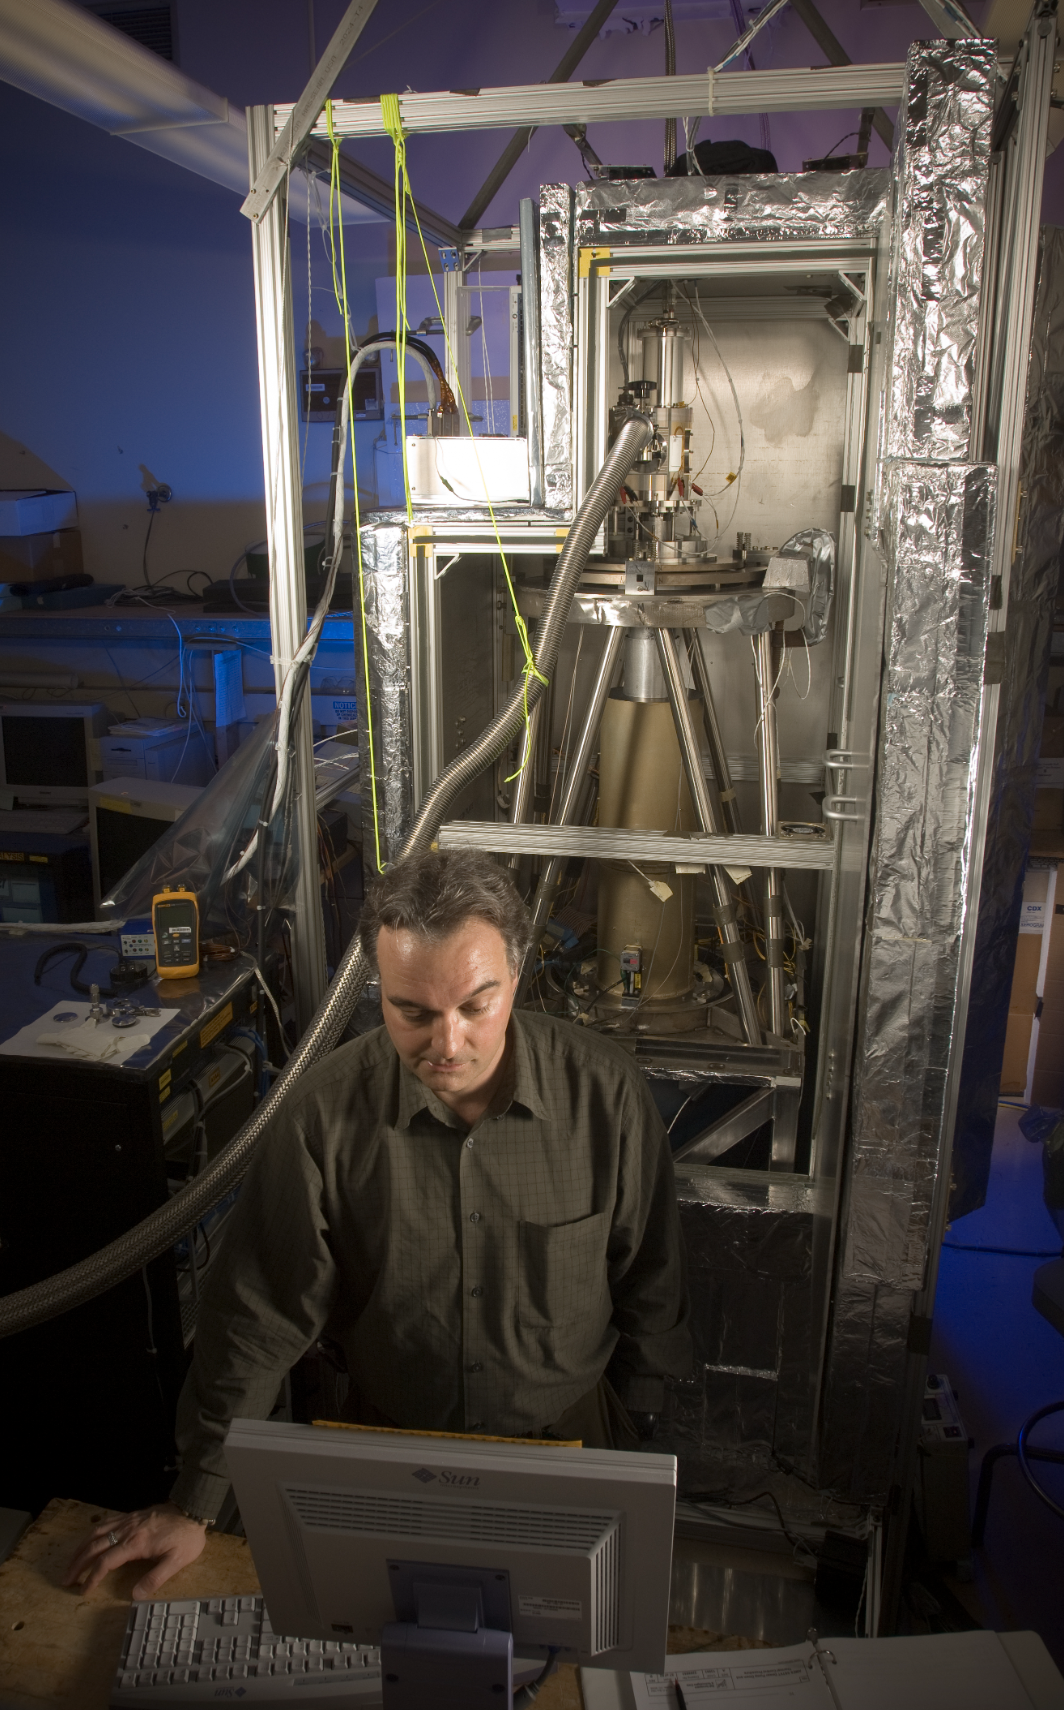 Jeff Van Cleve, integrante del equipo de Kepler, en el Laboratorio de Fotometría de Precisión del Centro de Investigación Ames en febrero de 2007. El aparato detrás de él es la Instalación del Banco de Pruebas Kepler, una maqueta del sistema que proporcionaría una demostración clave de la capacidad de Kepler.